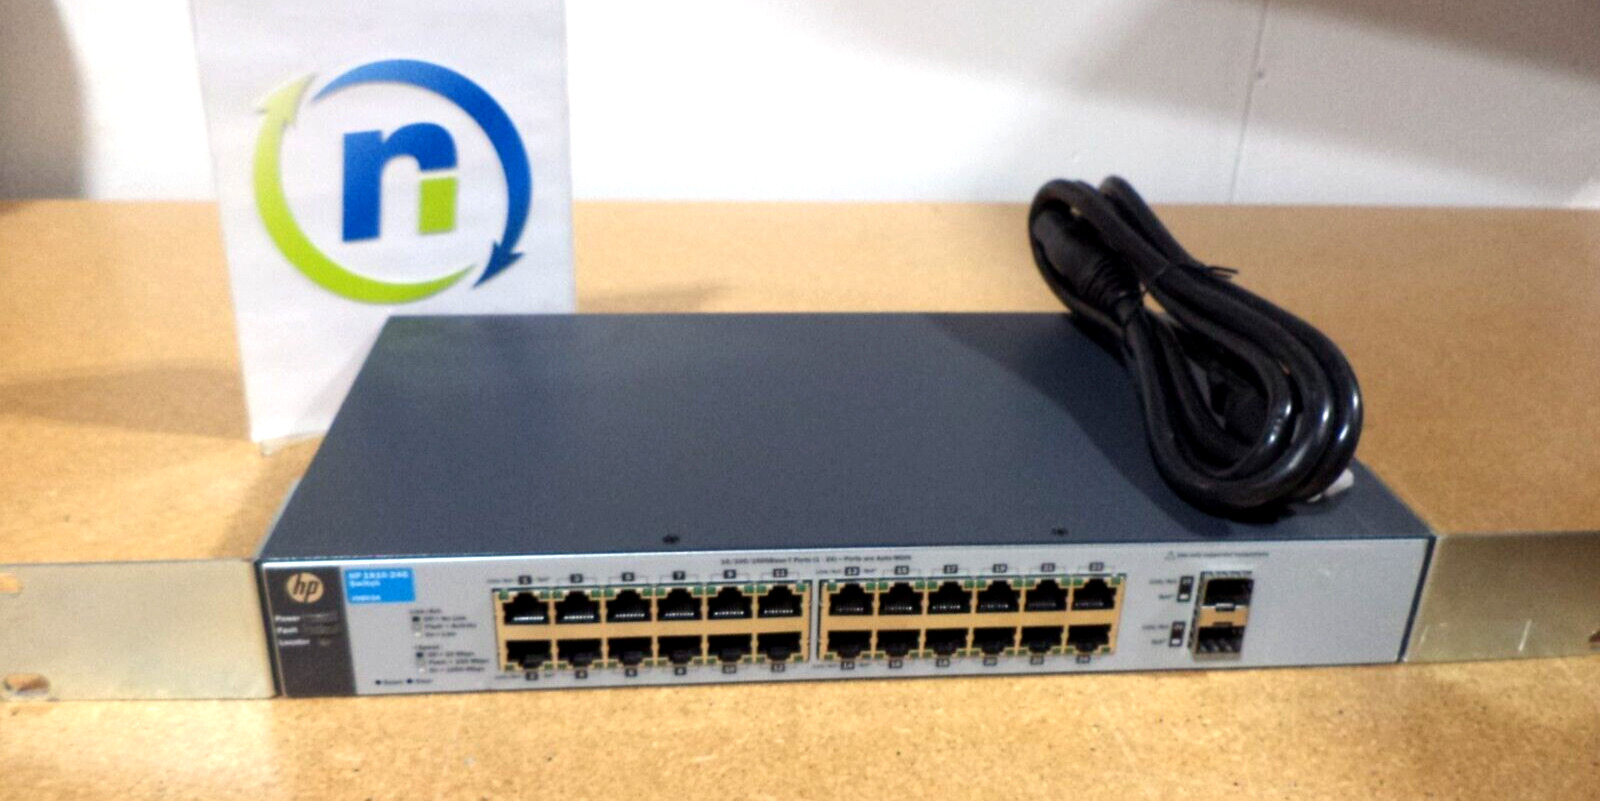 HP J9803A 1810-24G 24-Port Gigabit Ethernet Switch - 1 YR Warranty